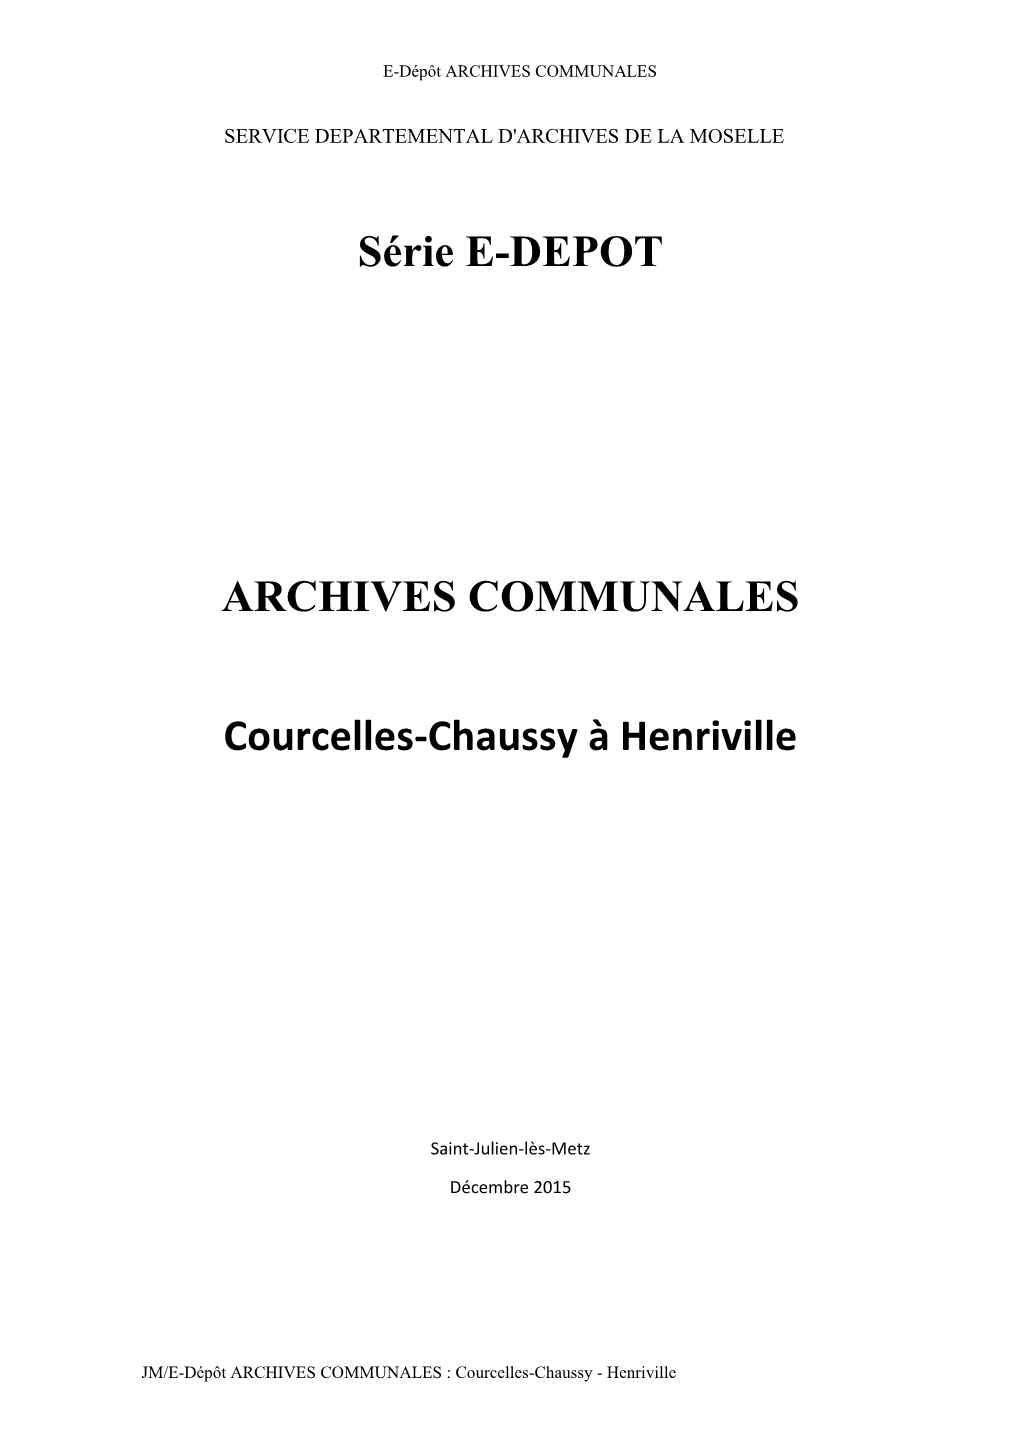 Courcelles-Chaussy À Henriville